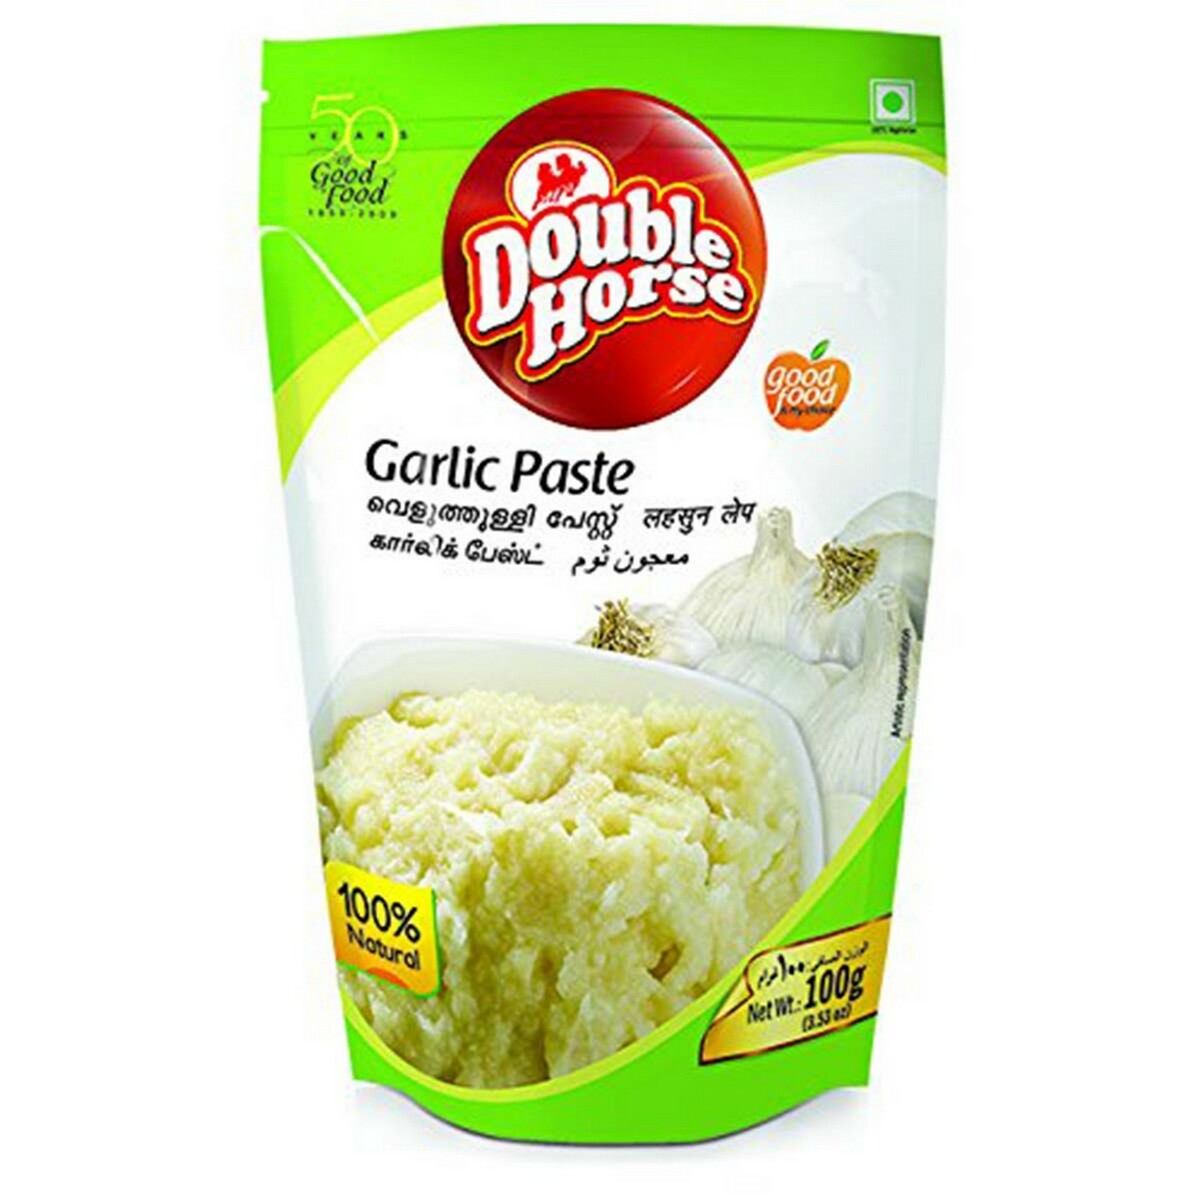 Double Horse Garlic Paste 100g